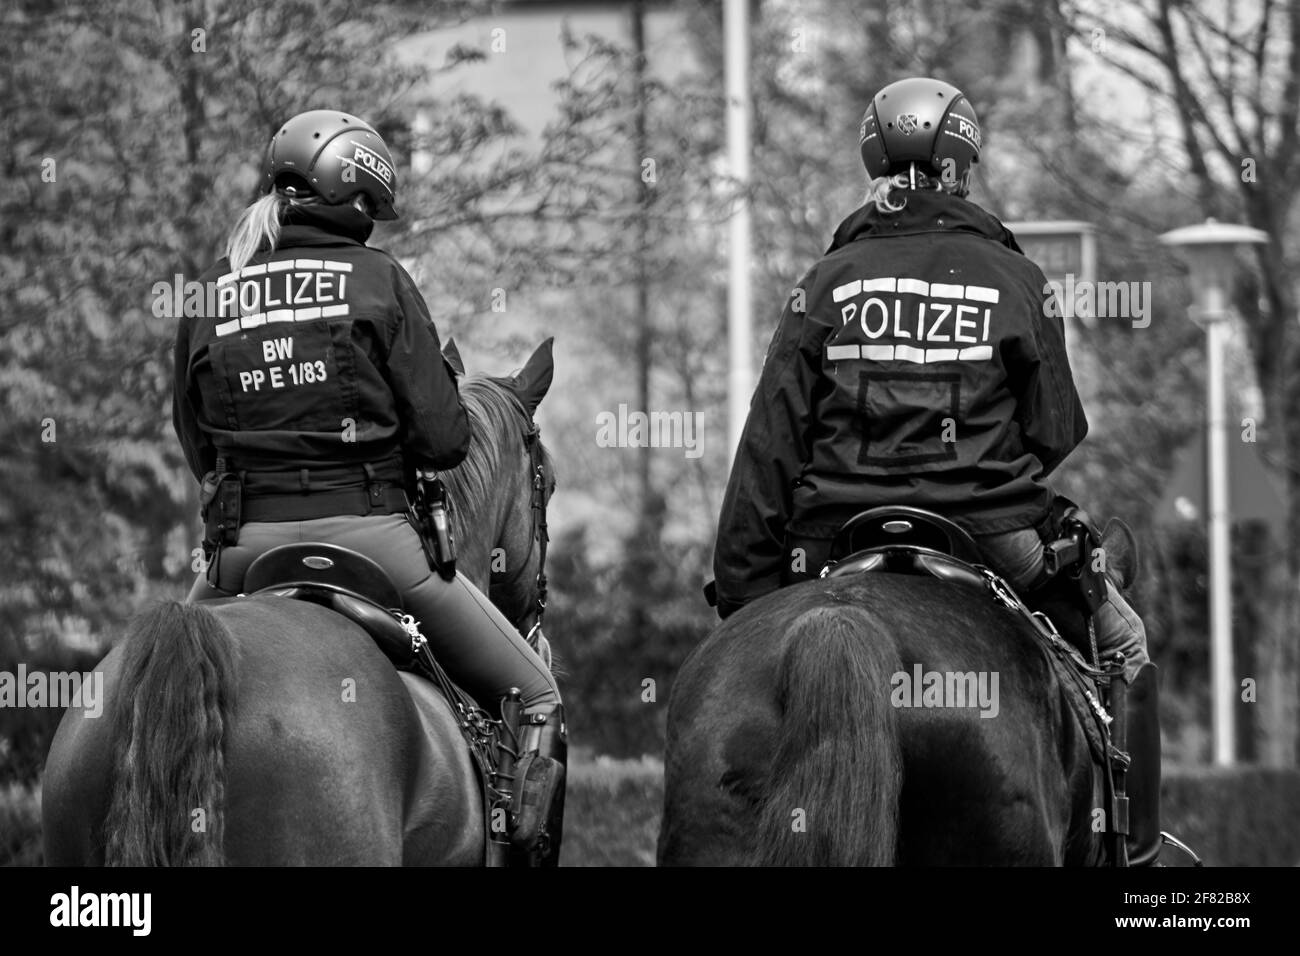 Dos mujeres patrullaron a caballo a la policía durante las protestas contra las restricciones pandémicas del covid-19. Foto de stock